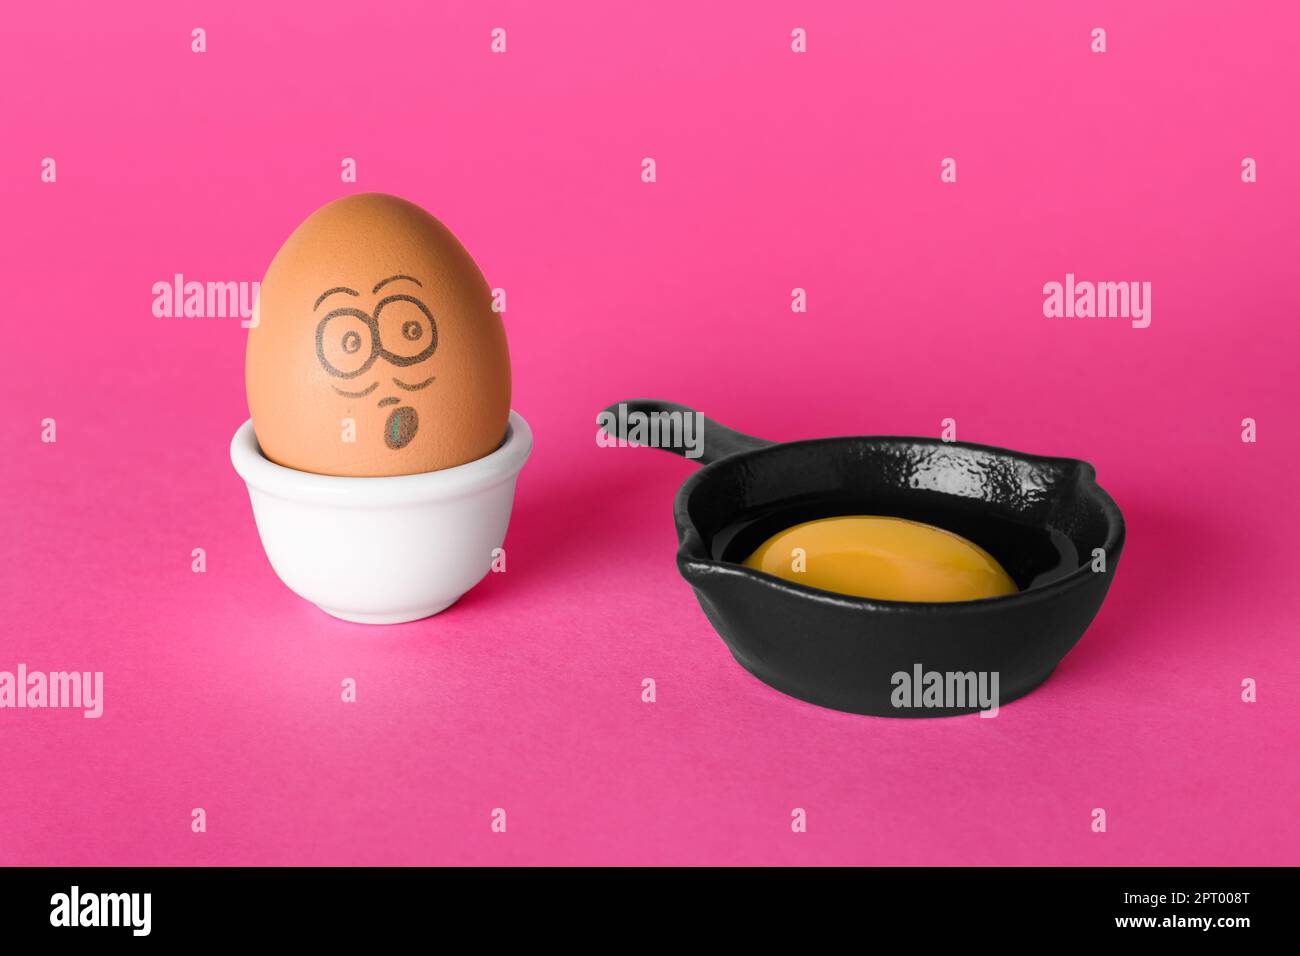 Ei mit gezogenem, geschocktem Gesicht und Eigelb in kleiner Bratpfanne auf pinkfarbenem Hintergrund Stockfoto